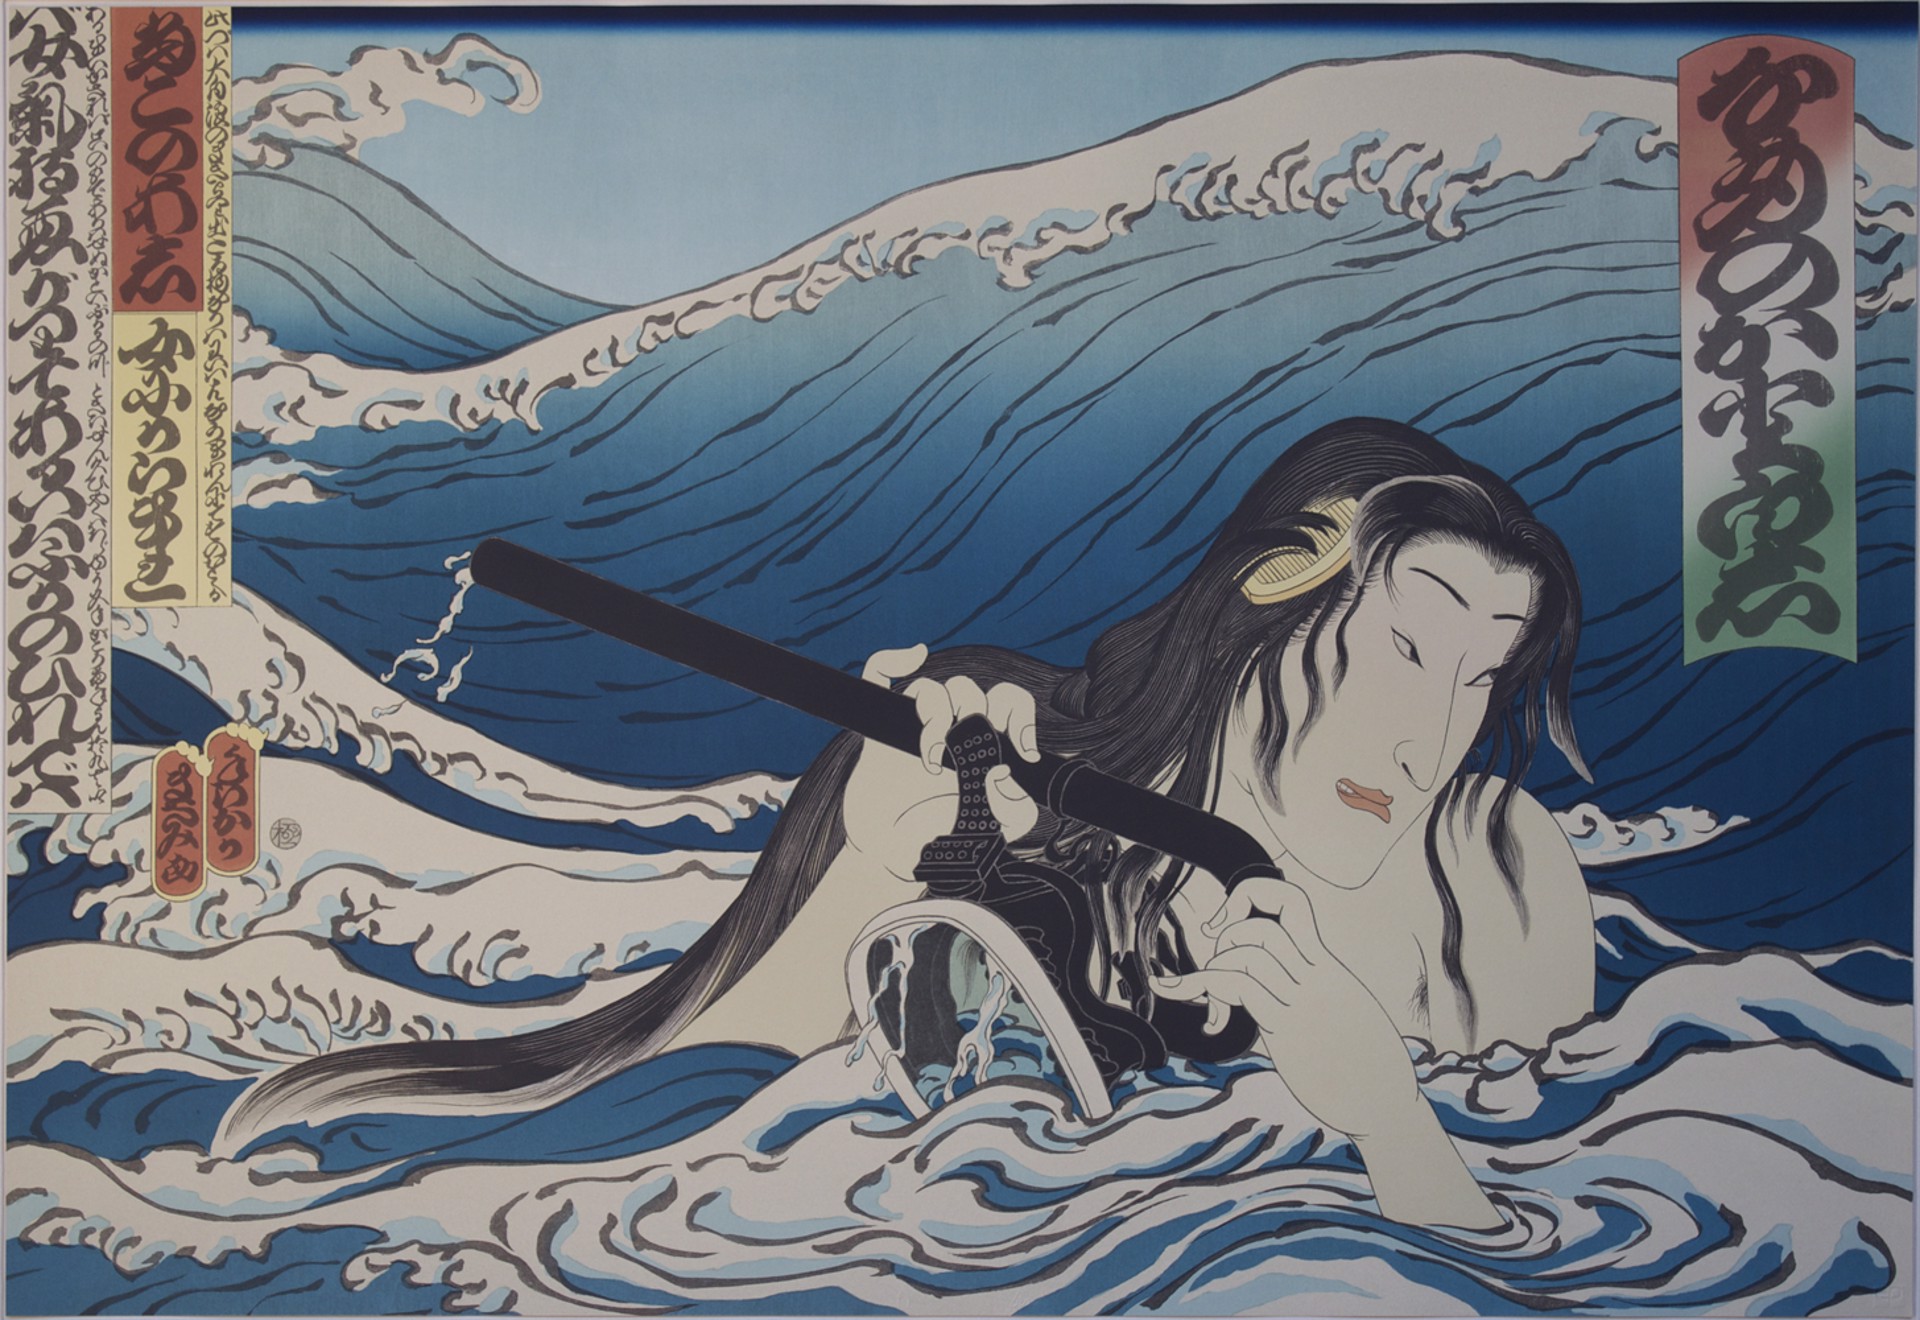 Namiyo at Hanauma Bay Wave Series by Masami Teraoka